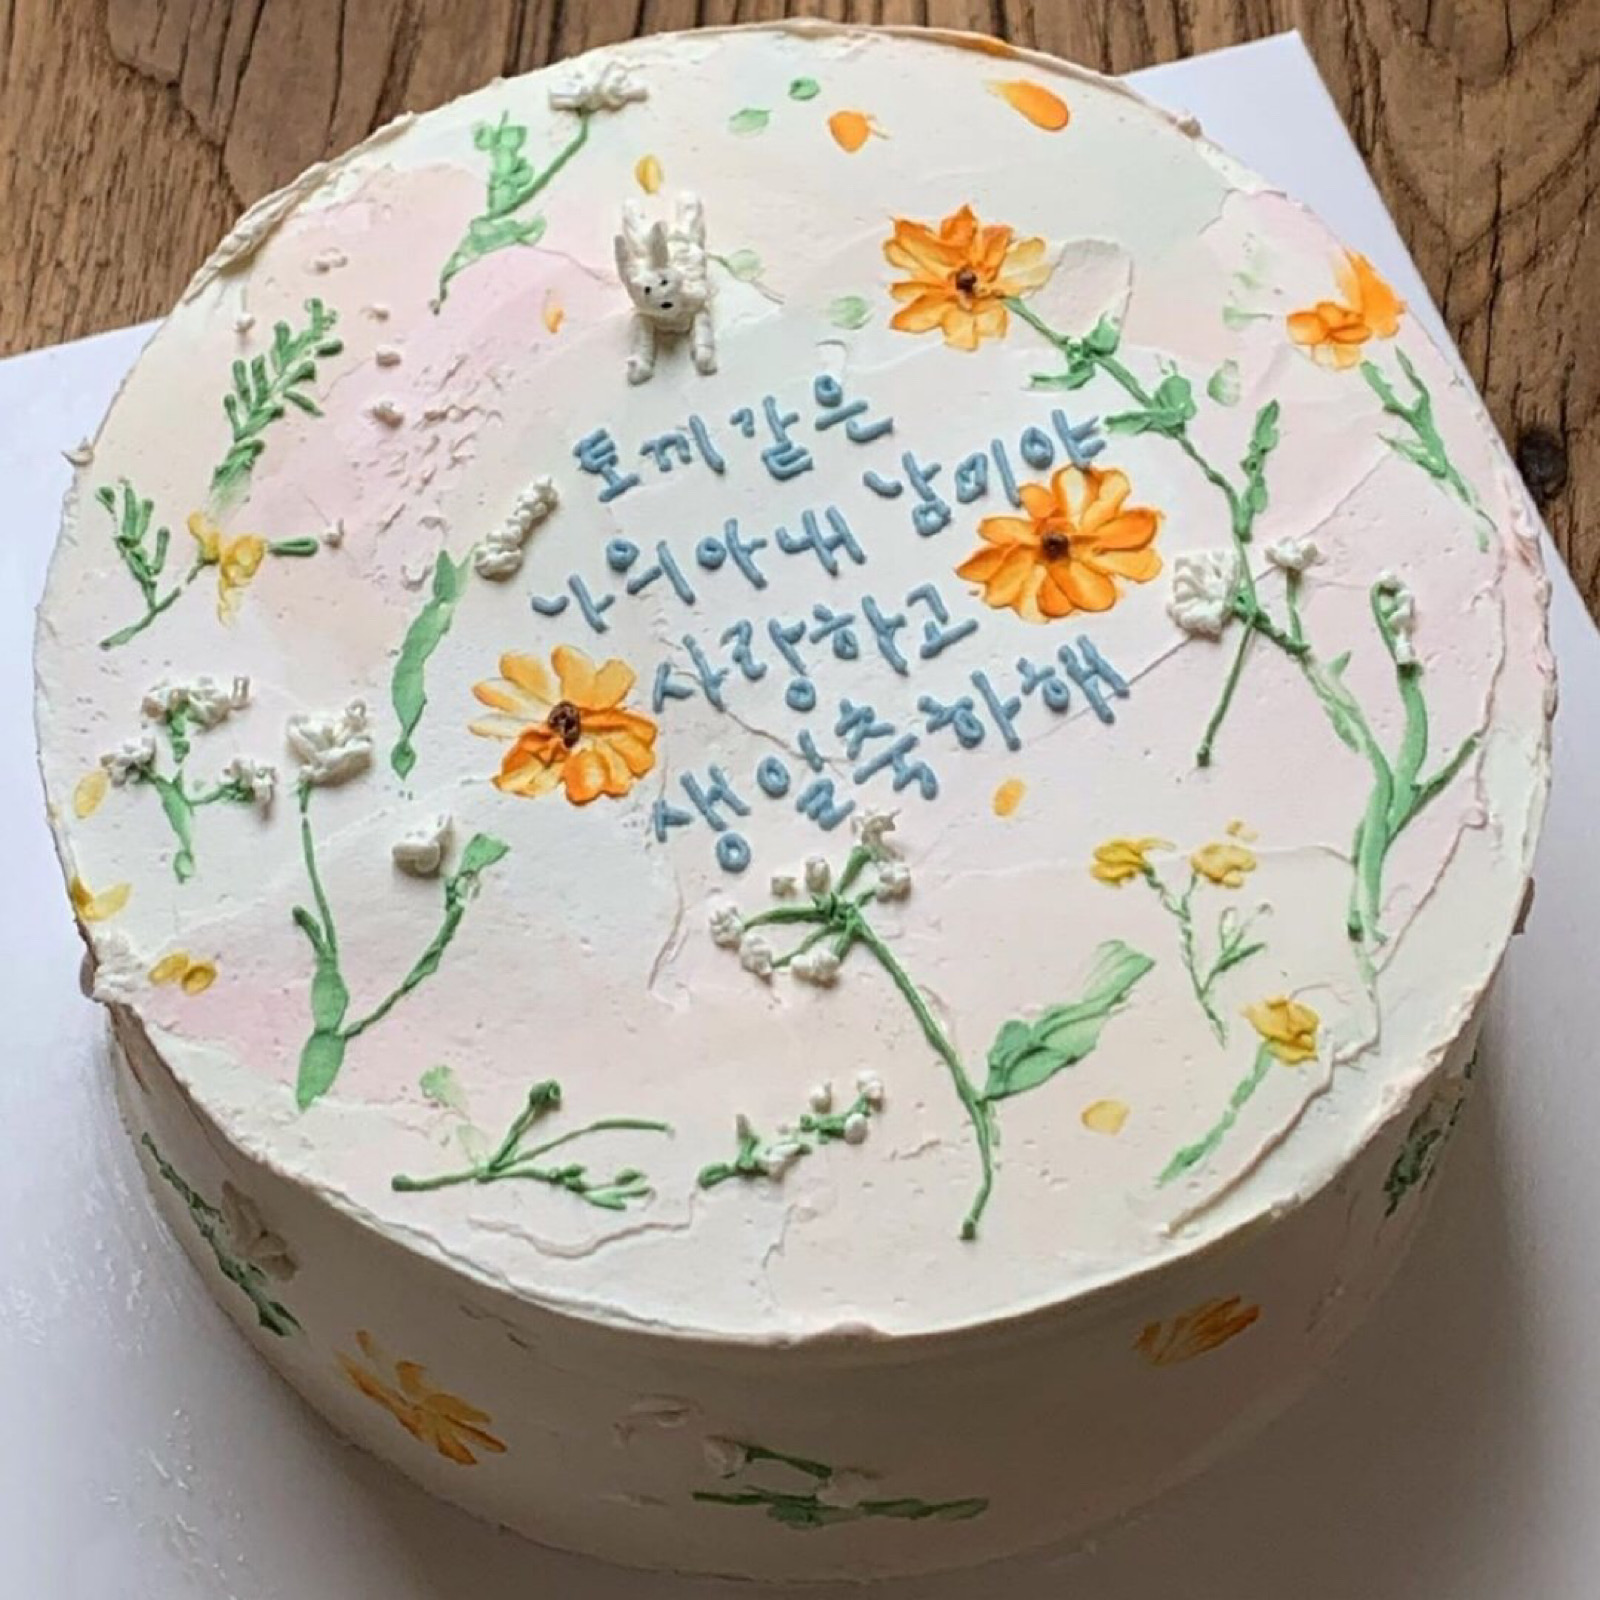 好看的蛋糕花朵 彩绘荷花蛋糕是画出来的吗